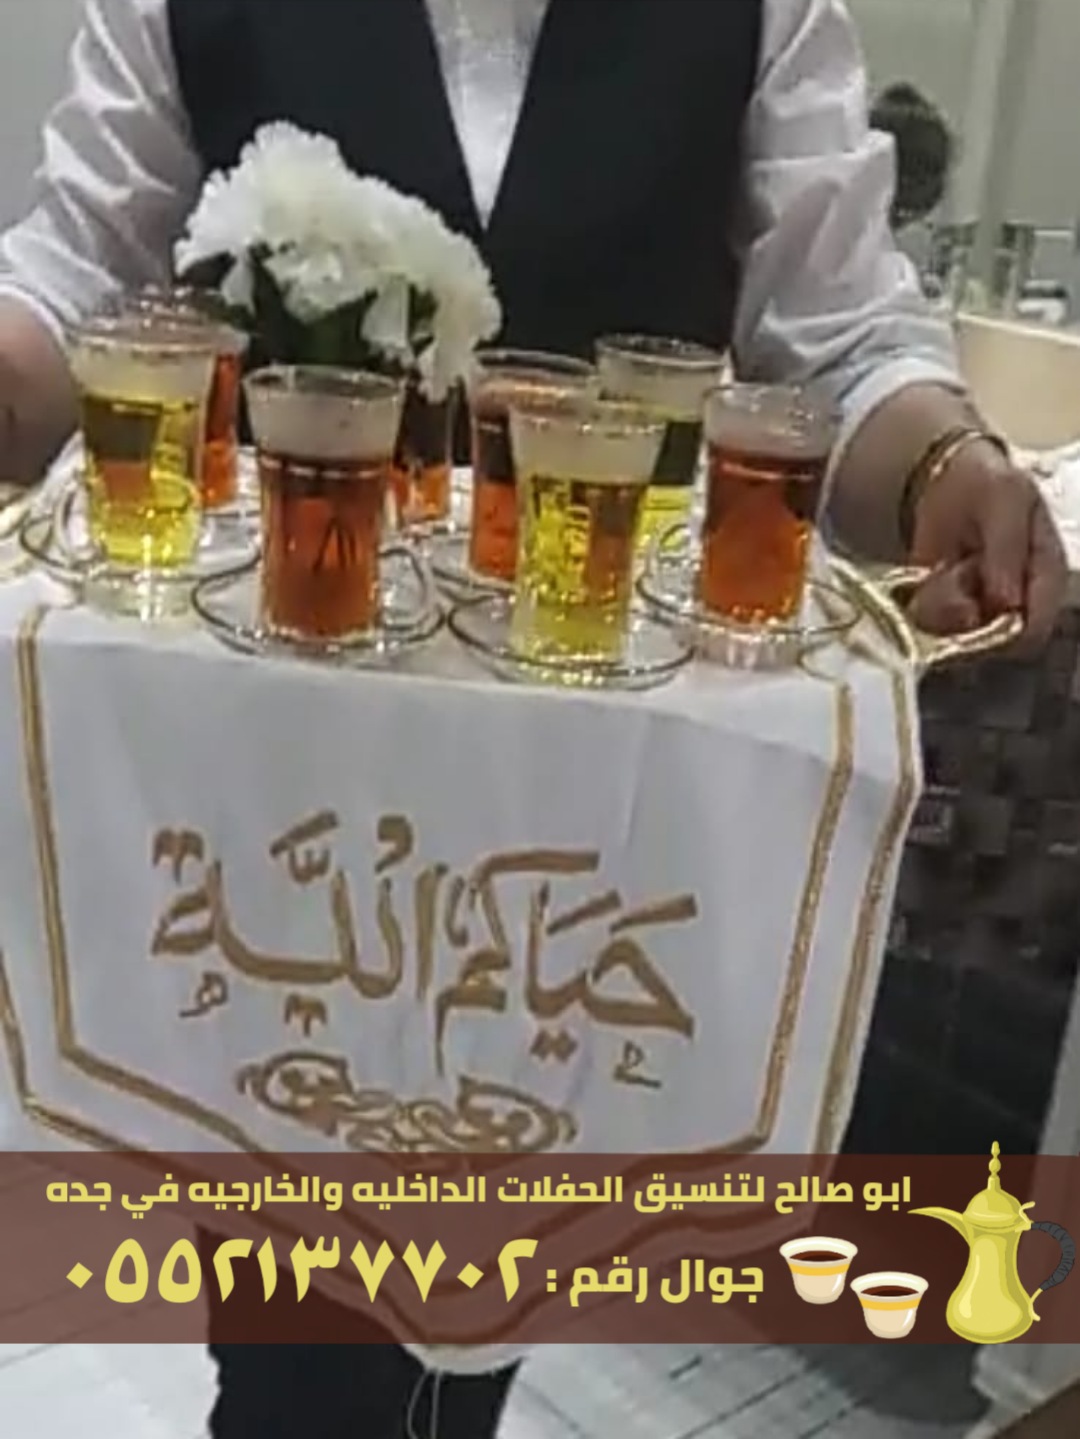 صبابابين قهوة رجال ونساء في جدة, 0552137702 P_2456aglz42